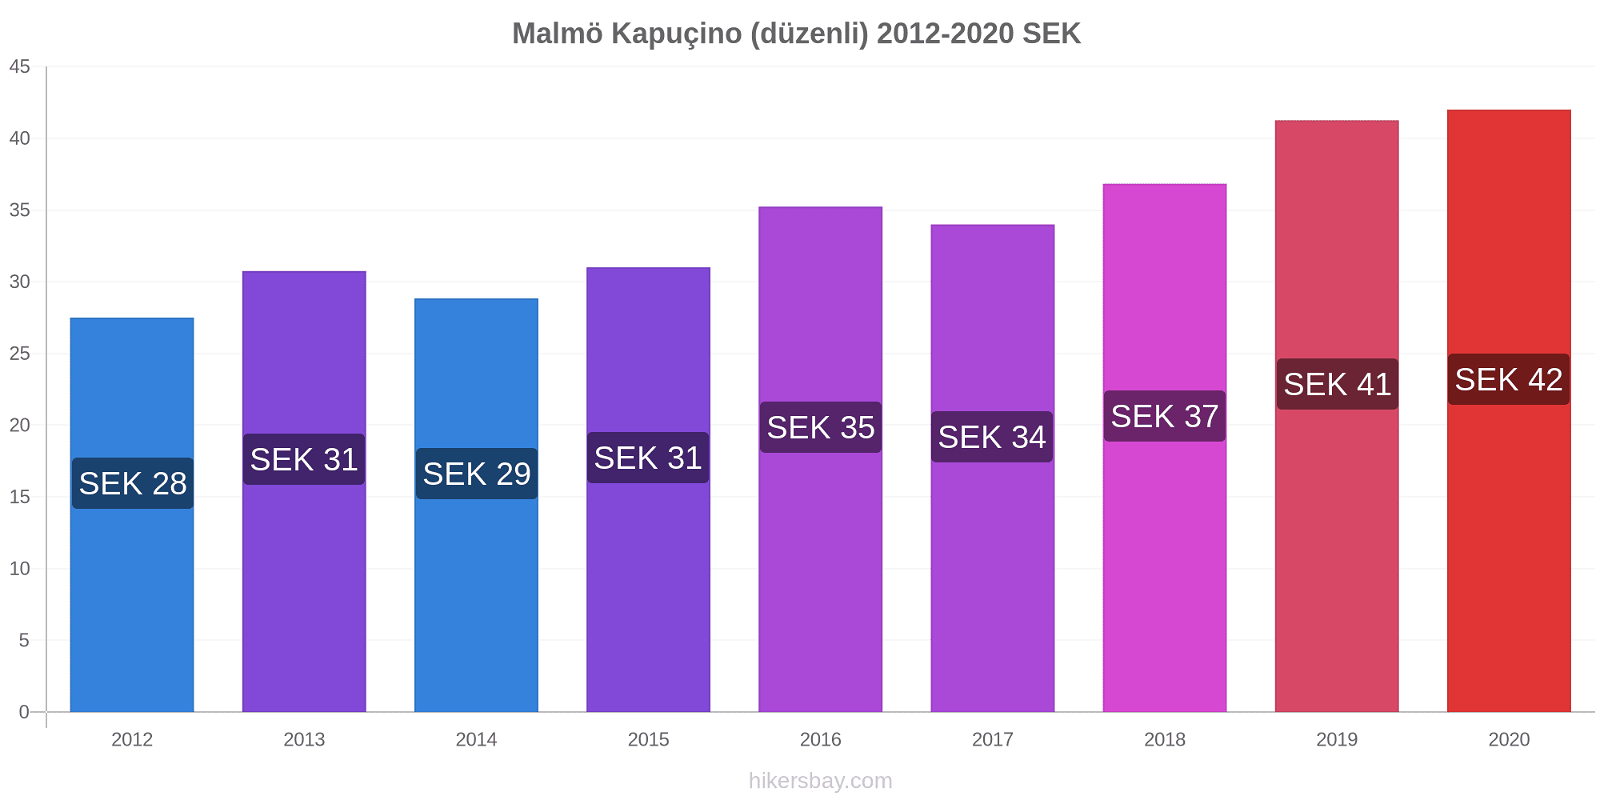 Malmö fiyat değişiklikleri Kapuçino (düzenli) hikersbay.com